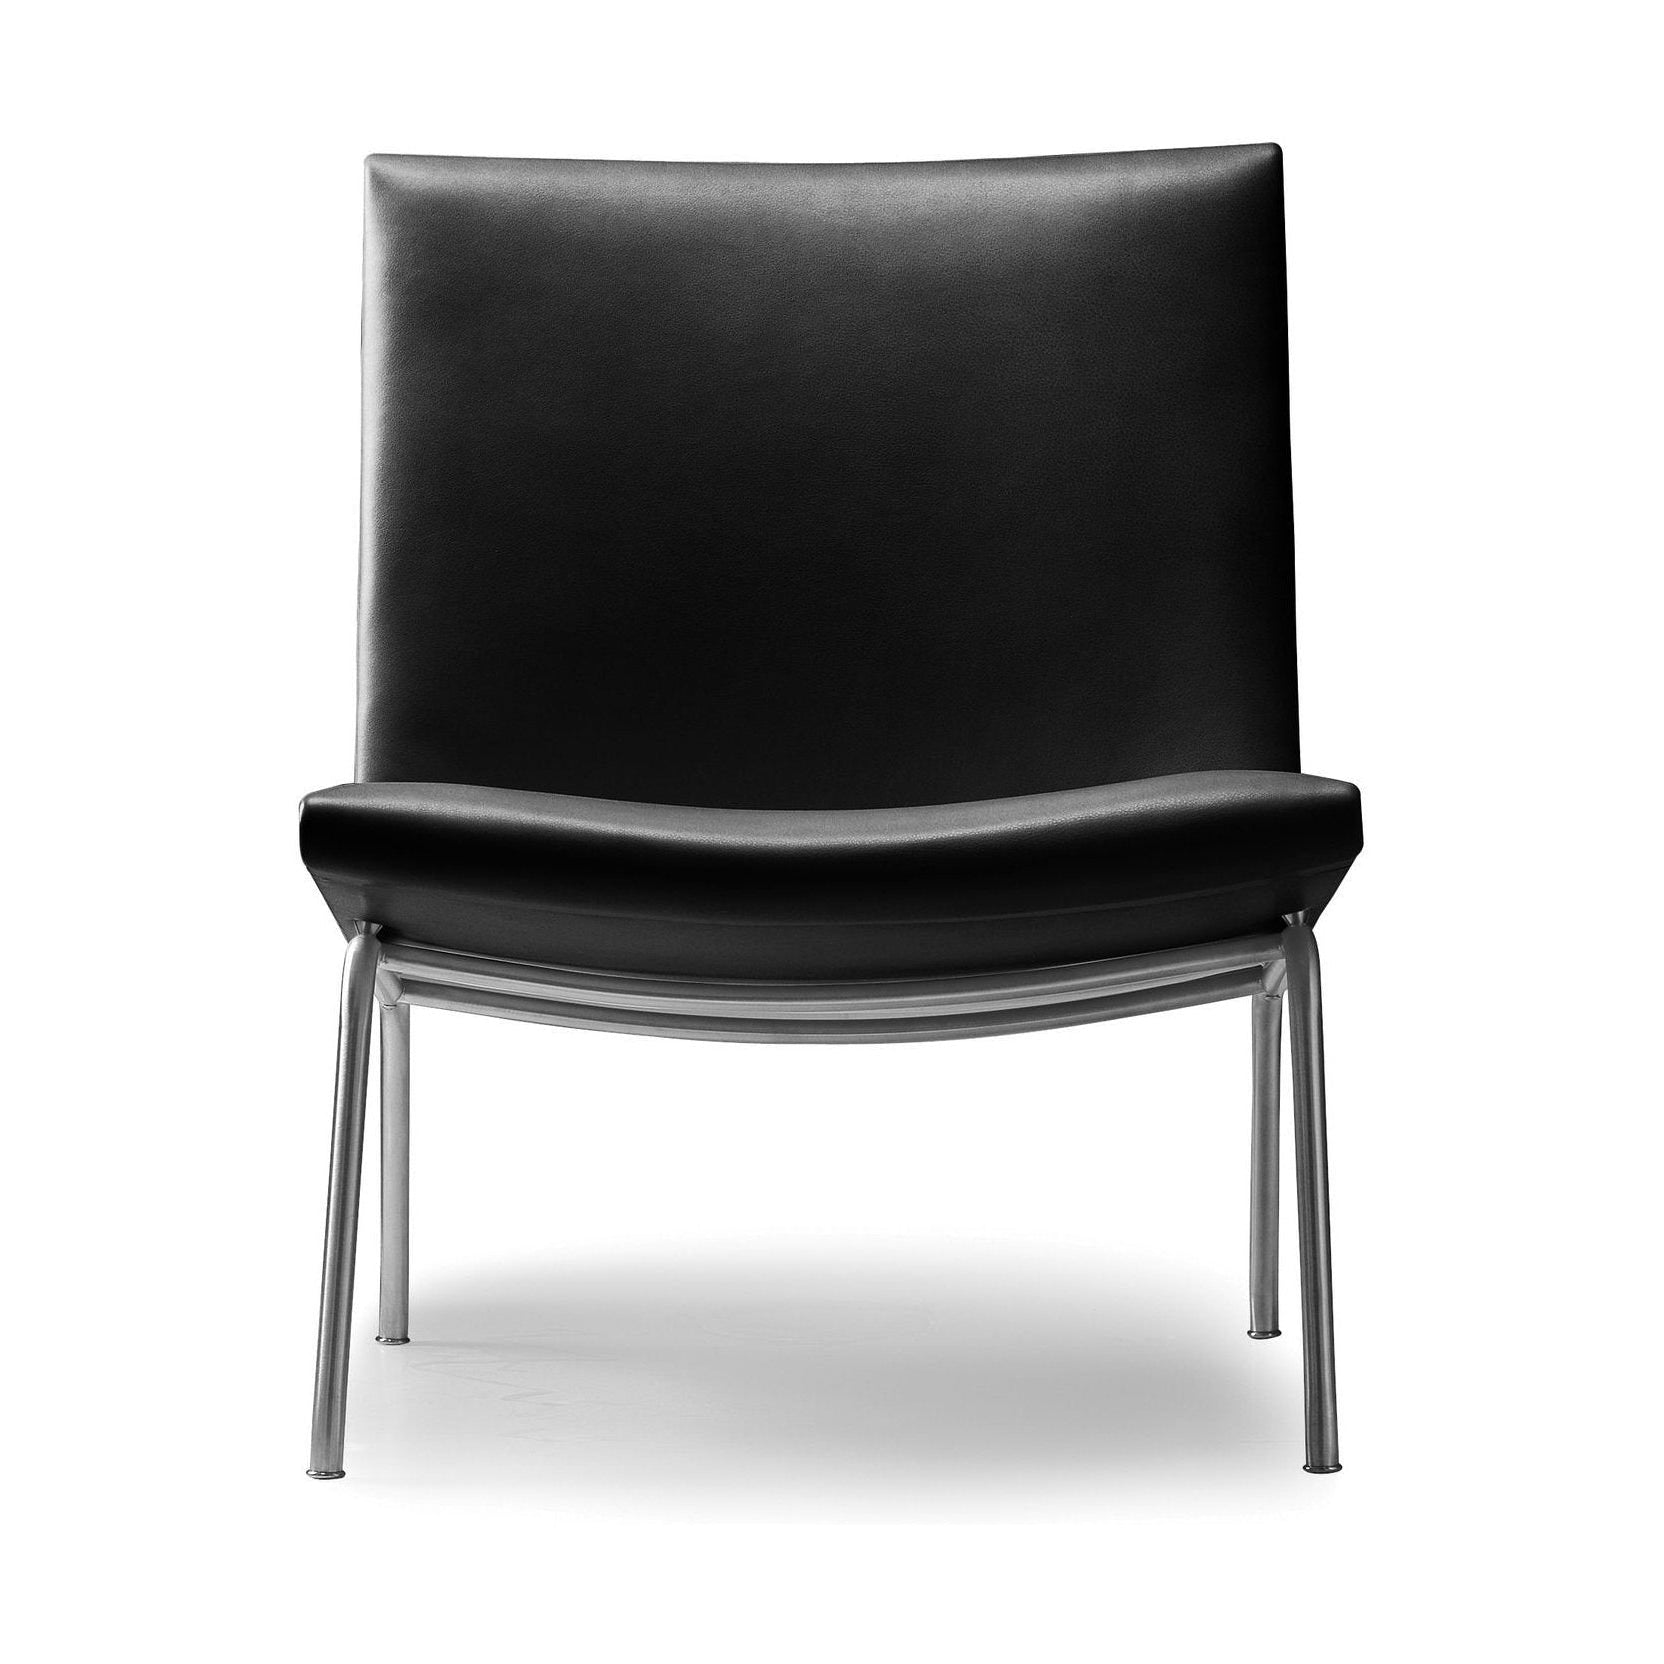 Carl Hansen Lusthavns stol rustfritt stål 1-person, svart skinn